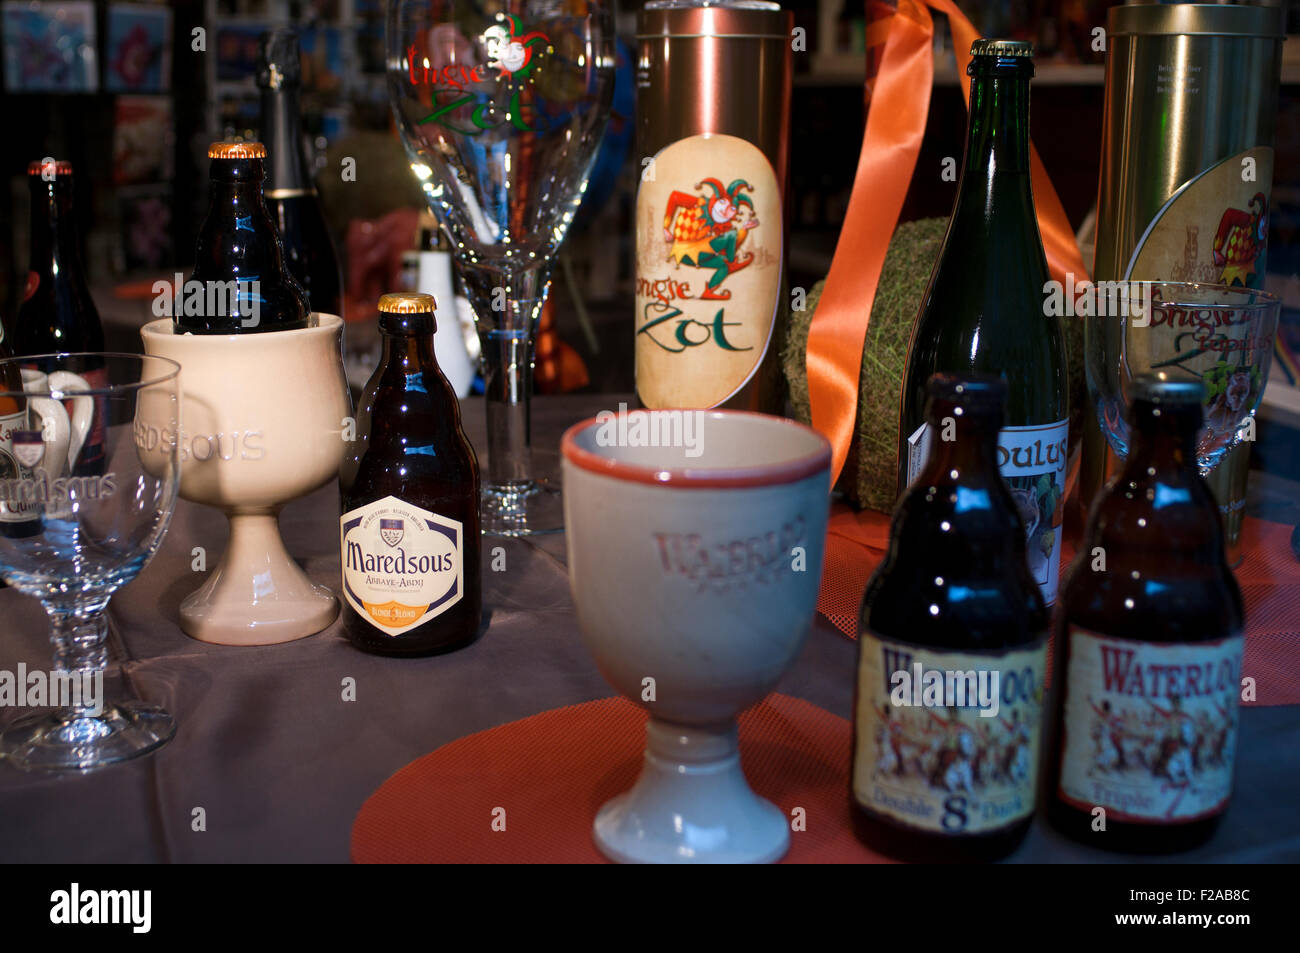 BIER IN BRÜGGE. Auswahl an Bierspezialitäten in einem Schaufenster in der Altstadt, Brügge, Belgien. Belgien hat mehr als 400 unterscheiden sich Stockfoto